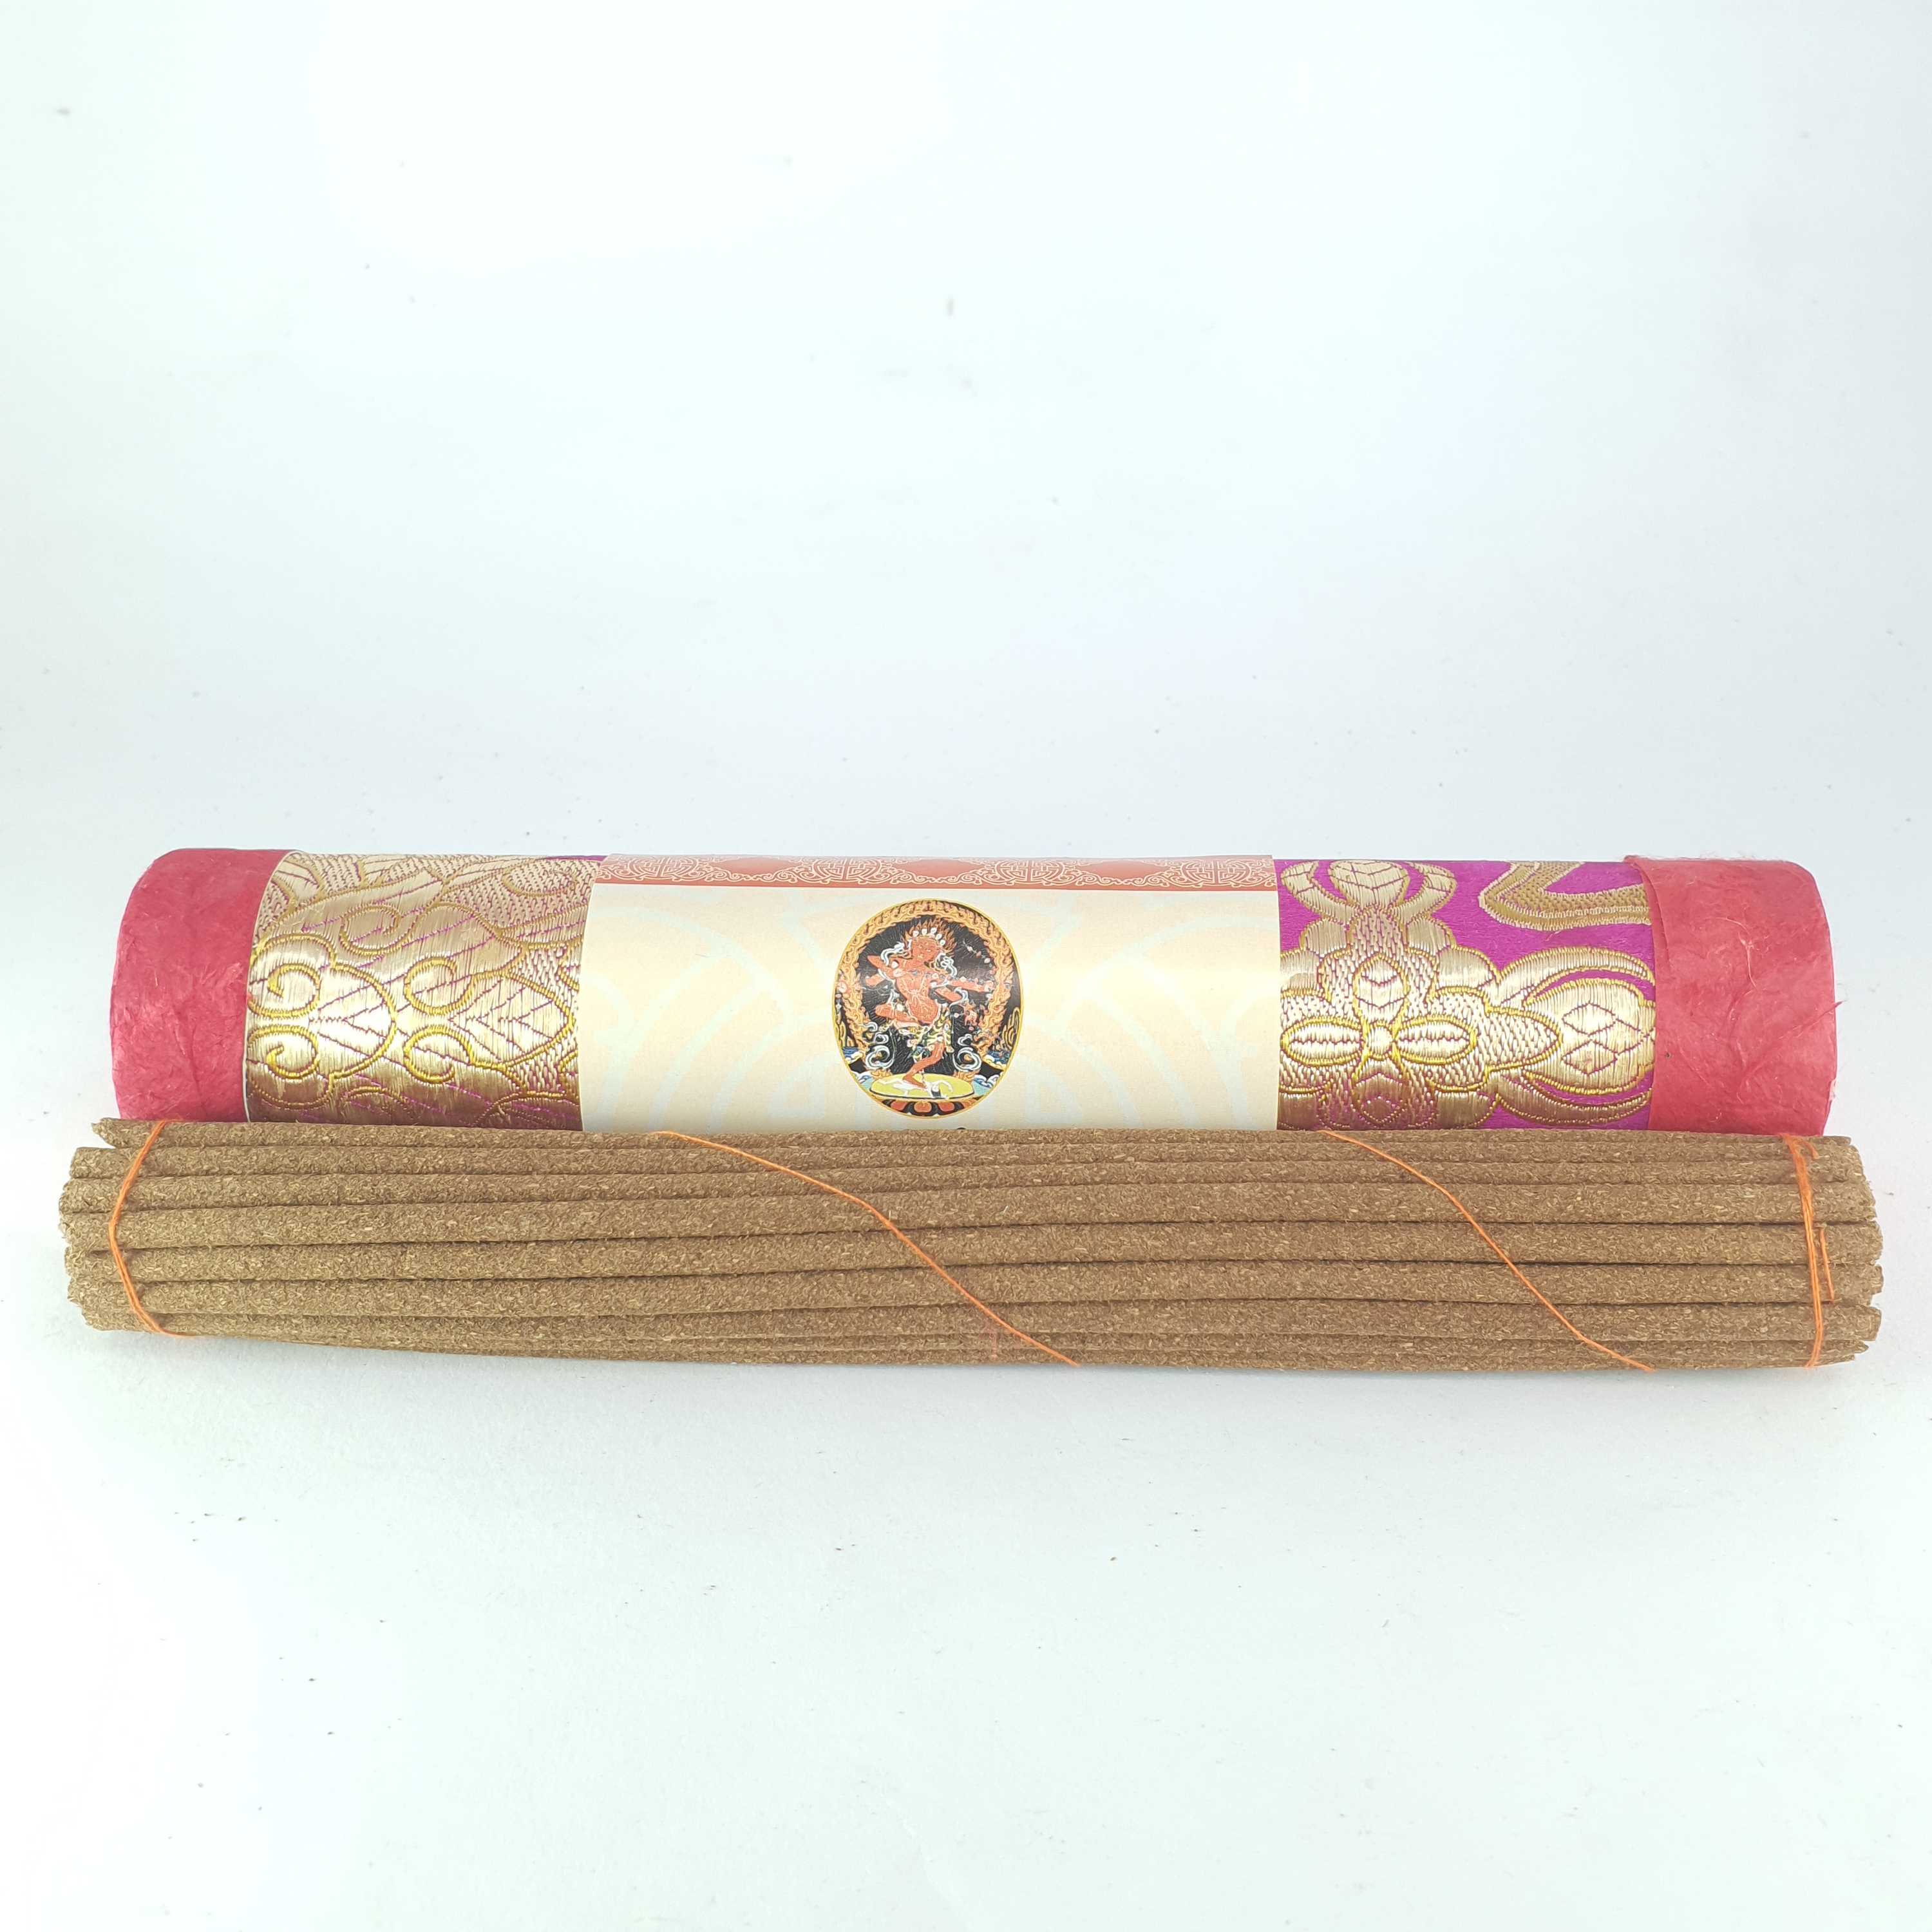 Kurukulla Buddhist Herbal Incense tube, Rigjeyma, Pema Khandro, Wangyi Lhamo, Red Tara